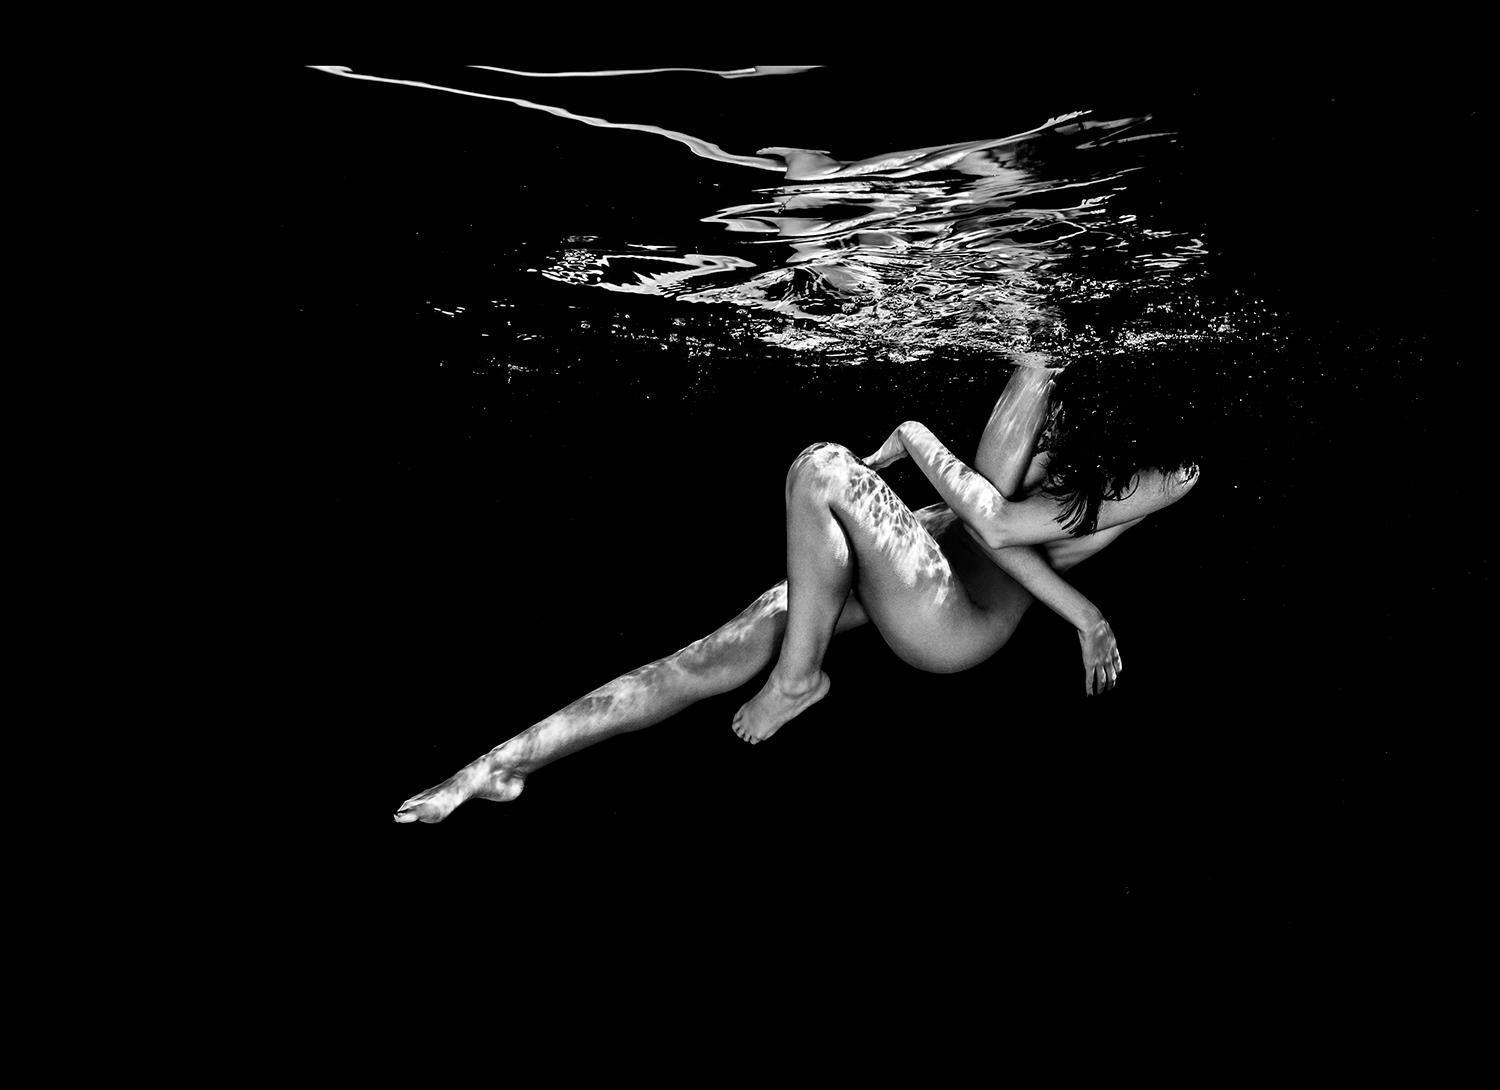 Nude Photograph Alex Sher - Vol de nuit - photographie sous-marine de nu en noir et blanc - tirage sur papier 23x32".